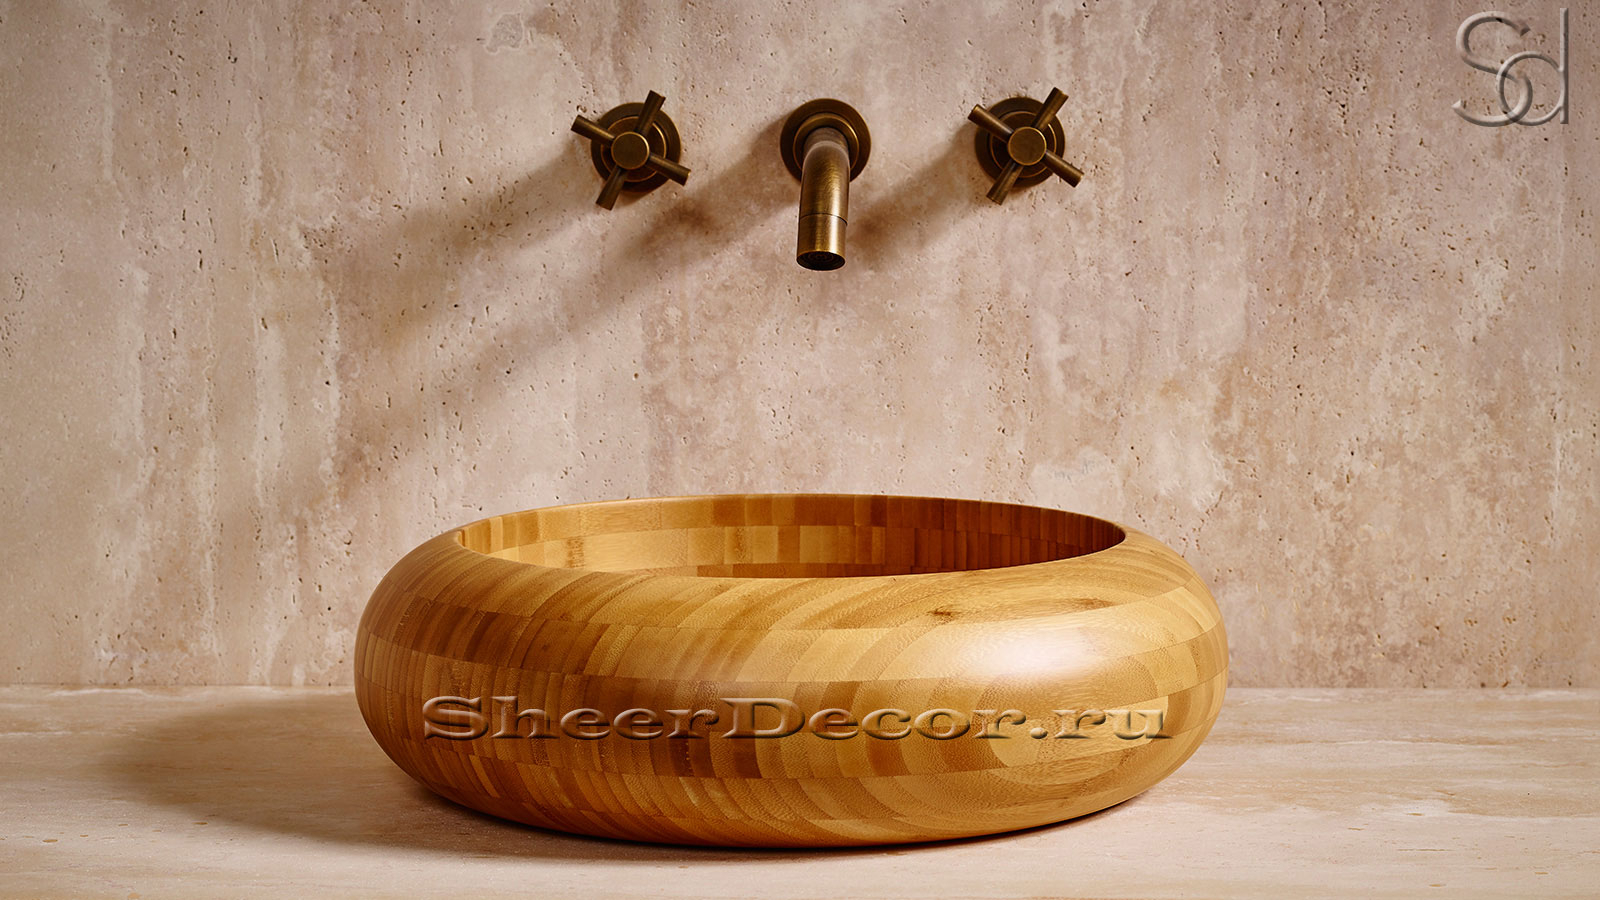 Деревянная раковина Ronda M4 из натурального бамбука Golden Bamboo ИНДОНЕЗИЯ 003600014 для ванной комнаты_1